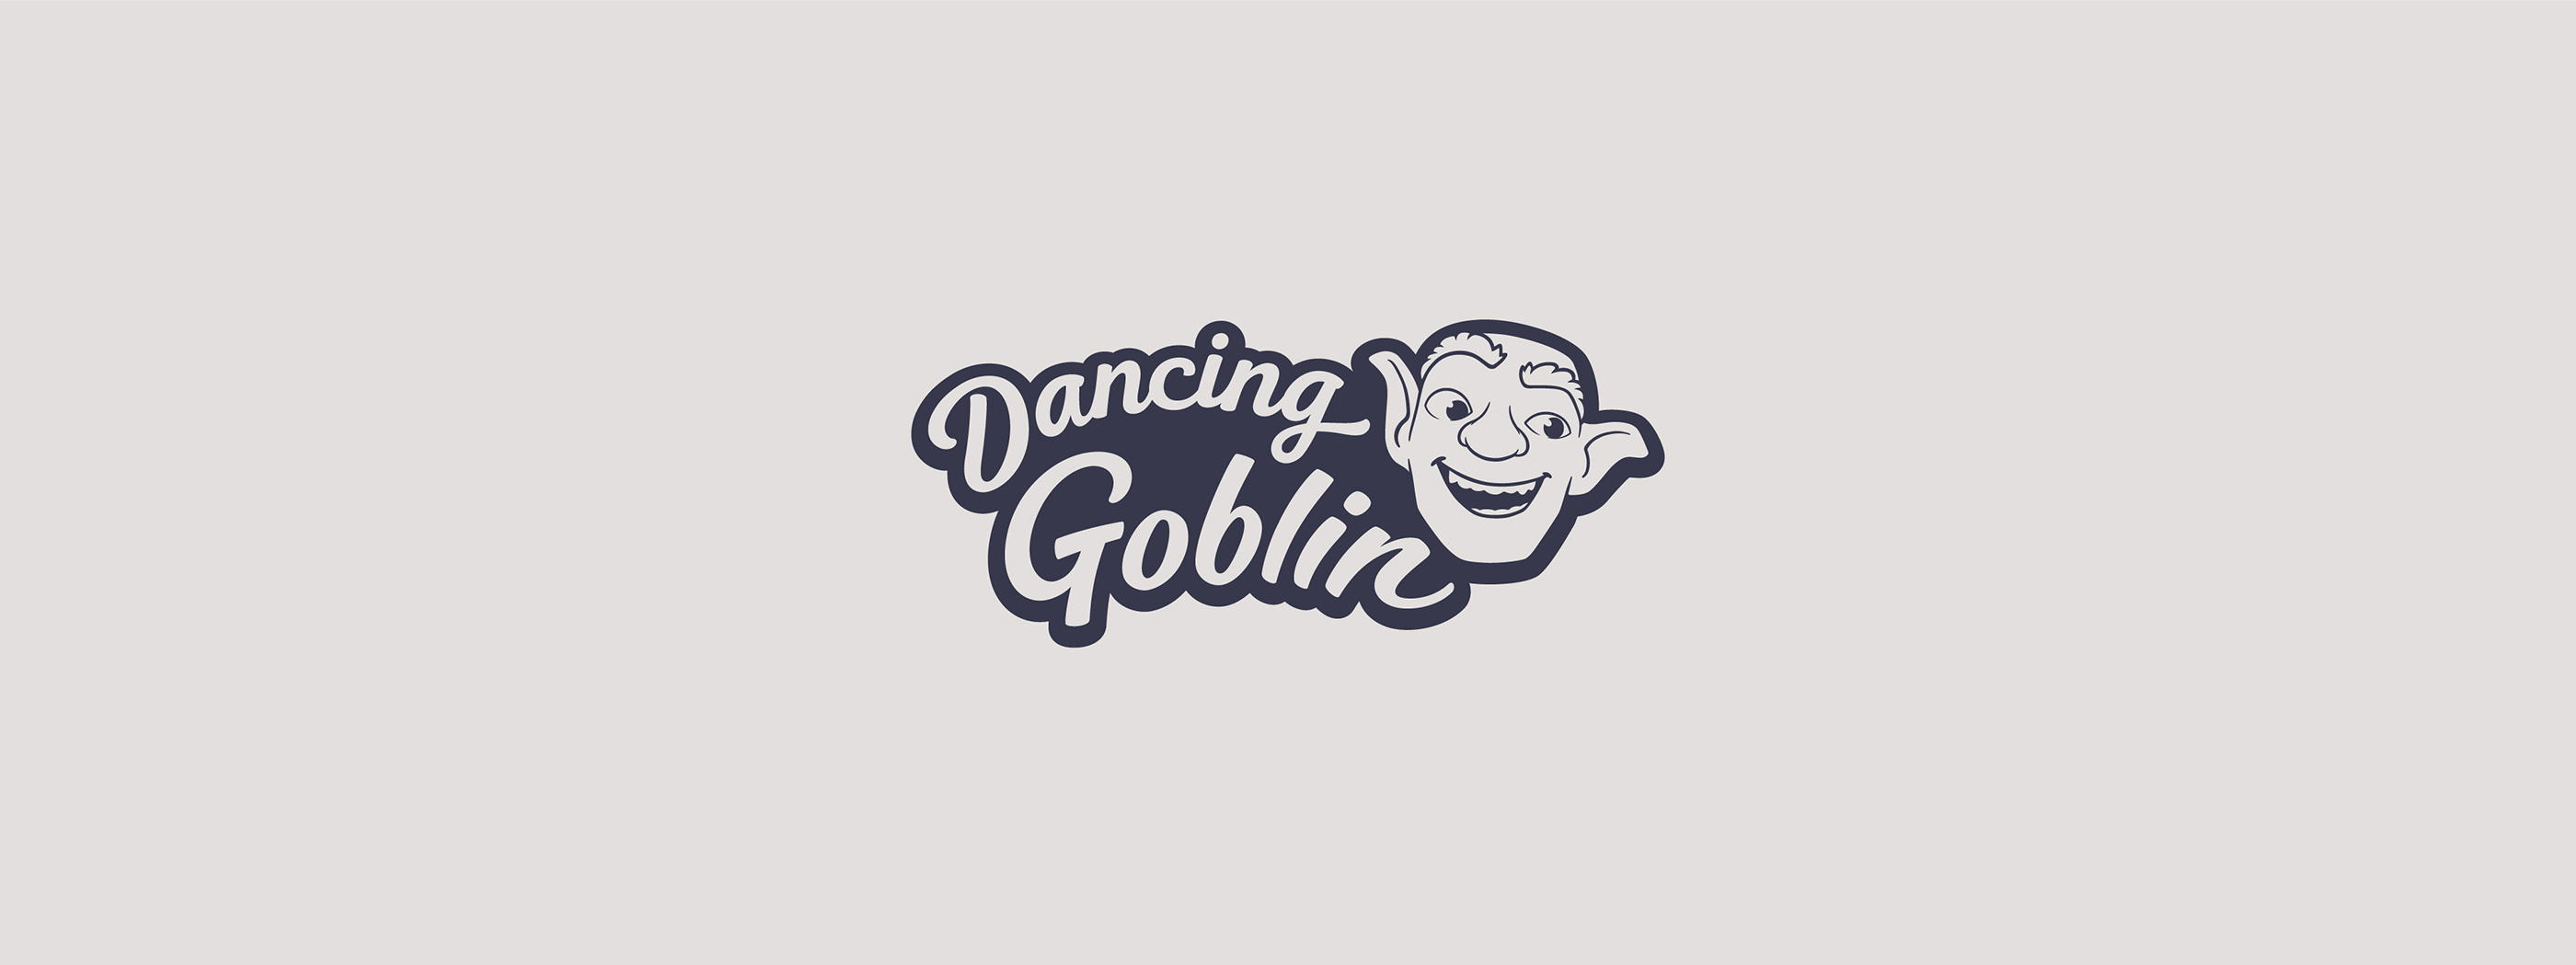 190619_Dancing_Goblin_PR